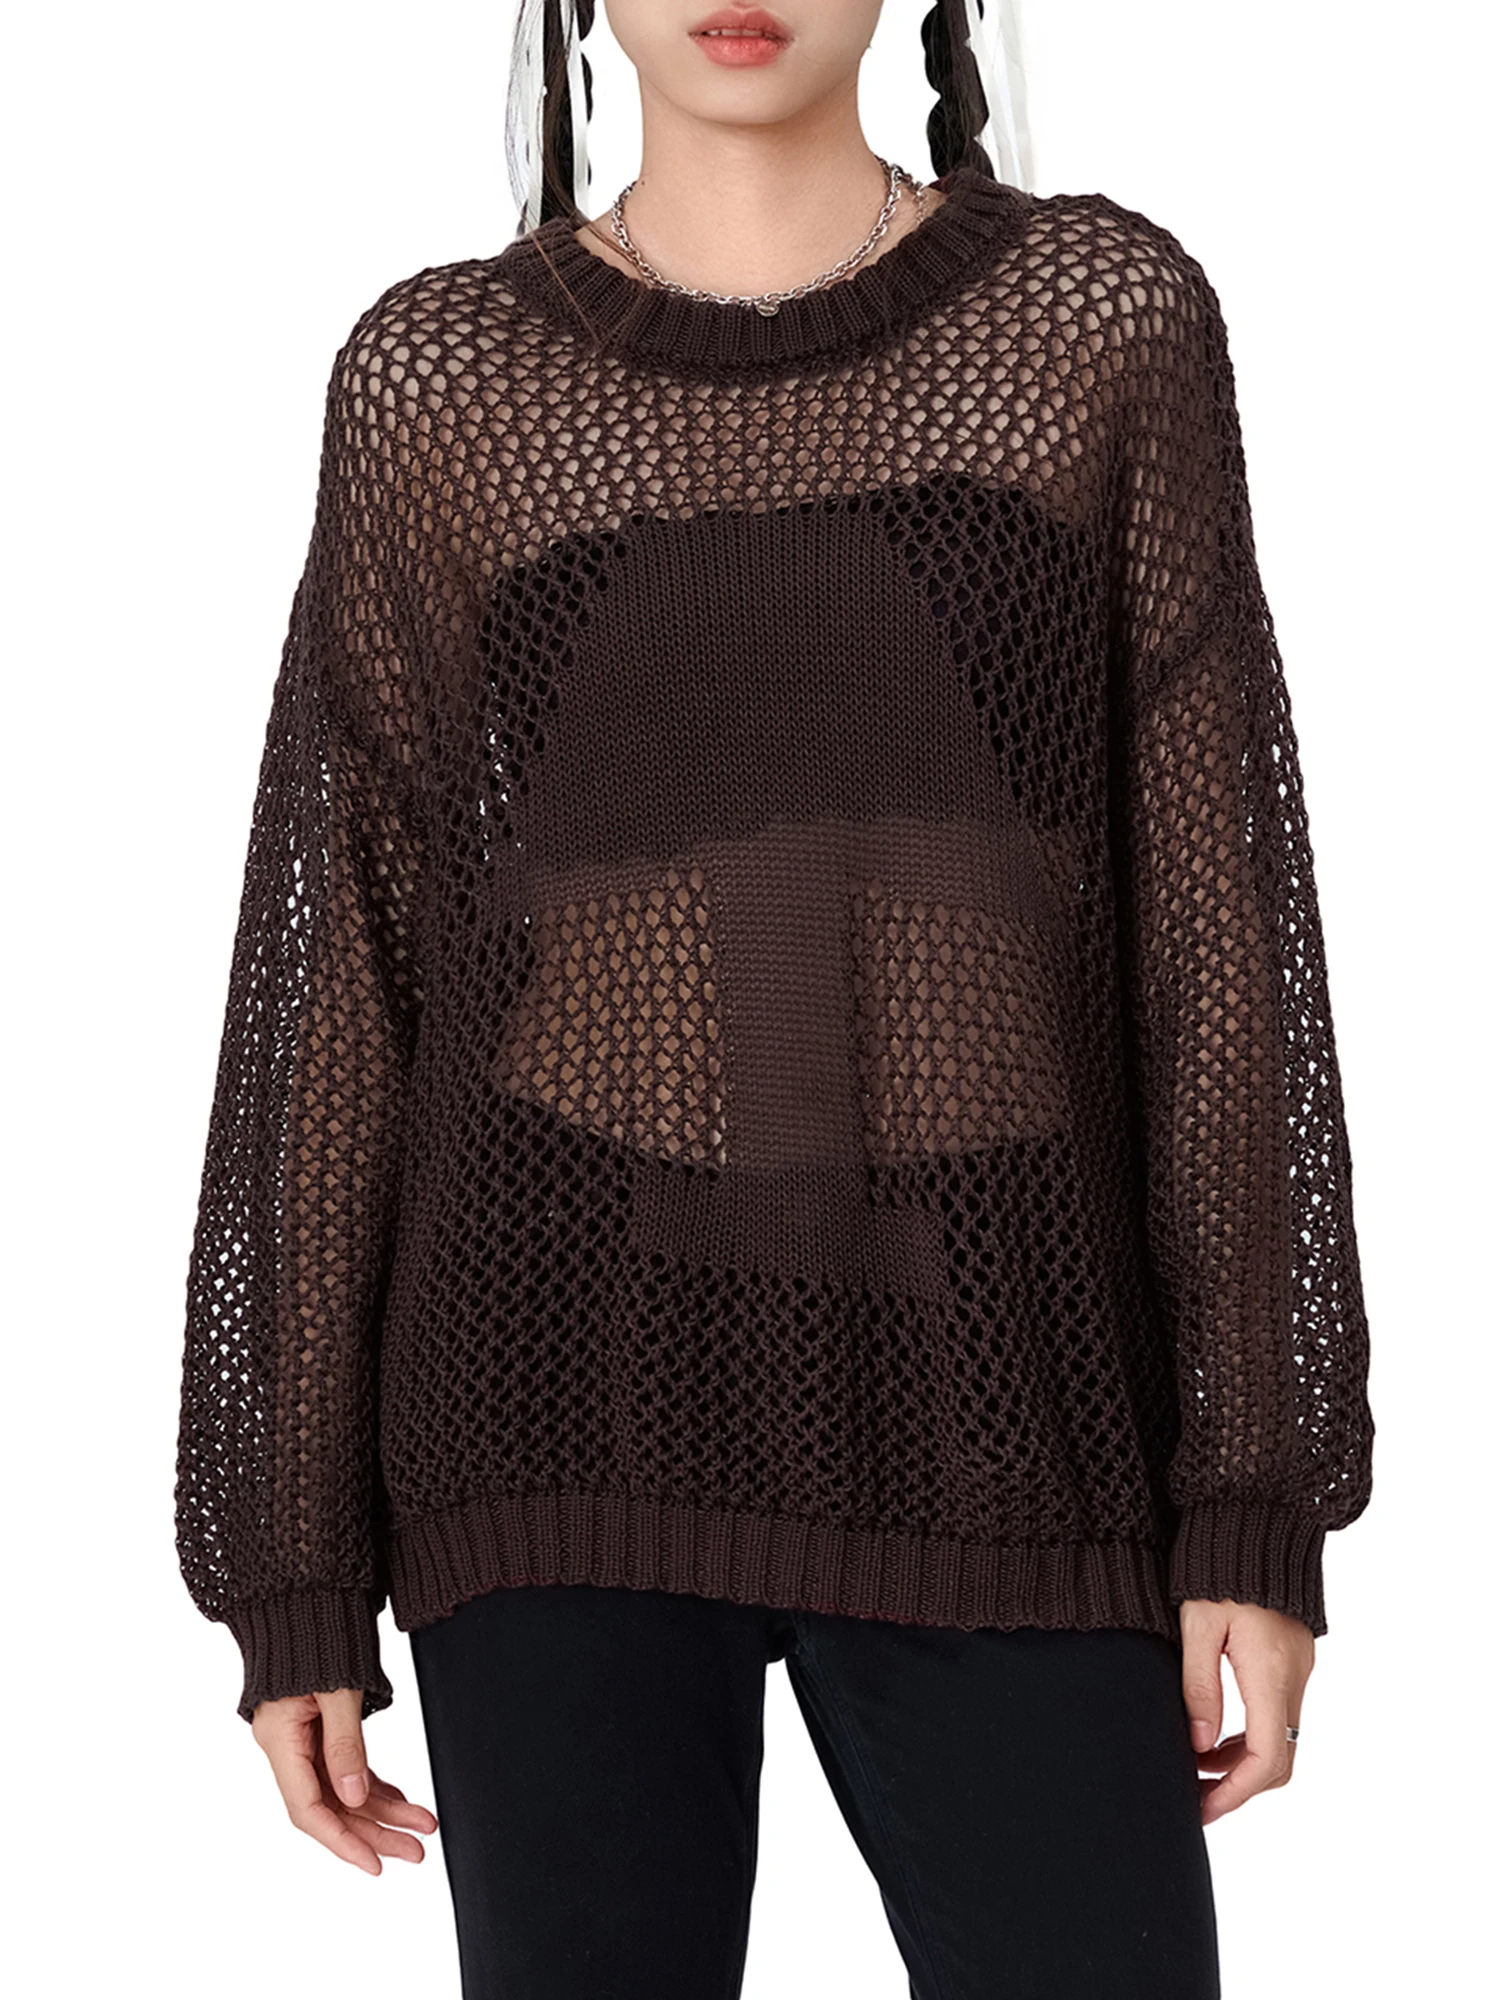 

Женский сетчатый вязаный укороченный топ, Пляжная накидка Y2K, прозрачный бикини с длинным рукавом, пуловер, свитера